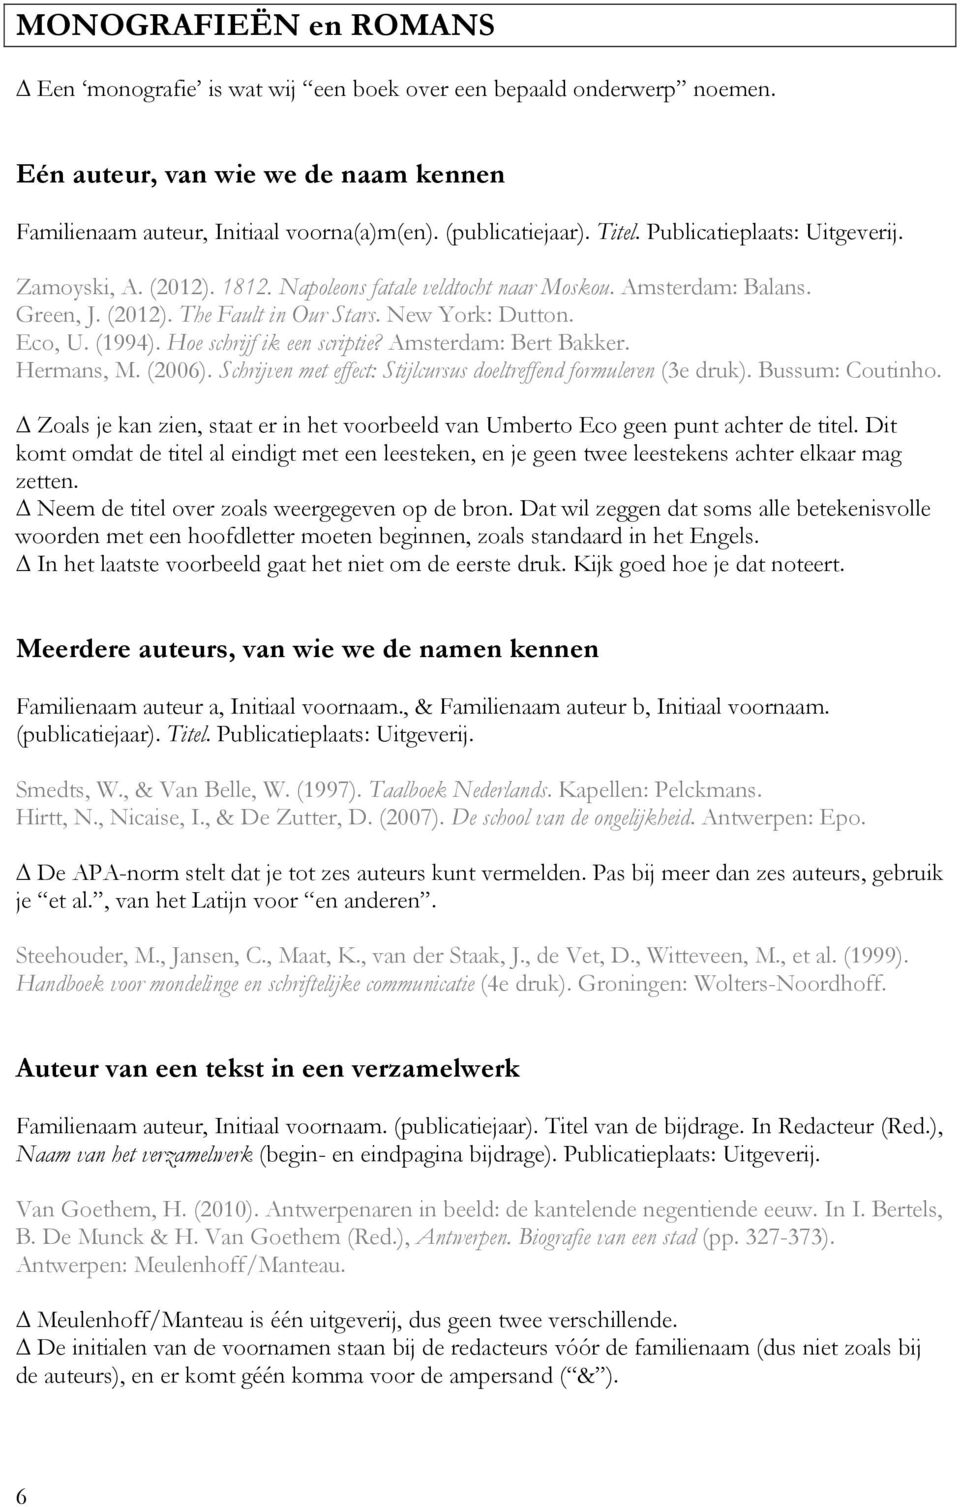 Hoe schrijf ik een scriptie? Amsterdam: Bert Bakker. Hermans, M. (2006). Schrijven met effect: Stijlcursus doeltreffend formuleren (3e druk). Bussum: Coutinho.